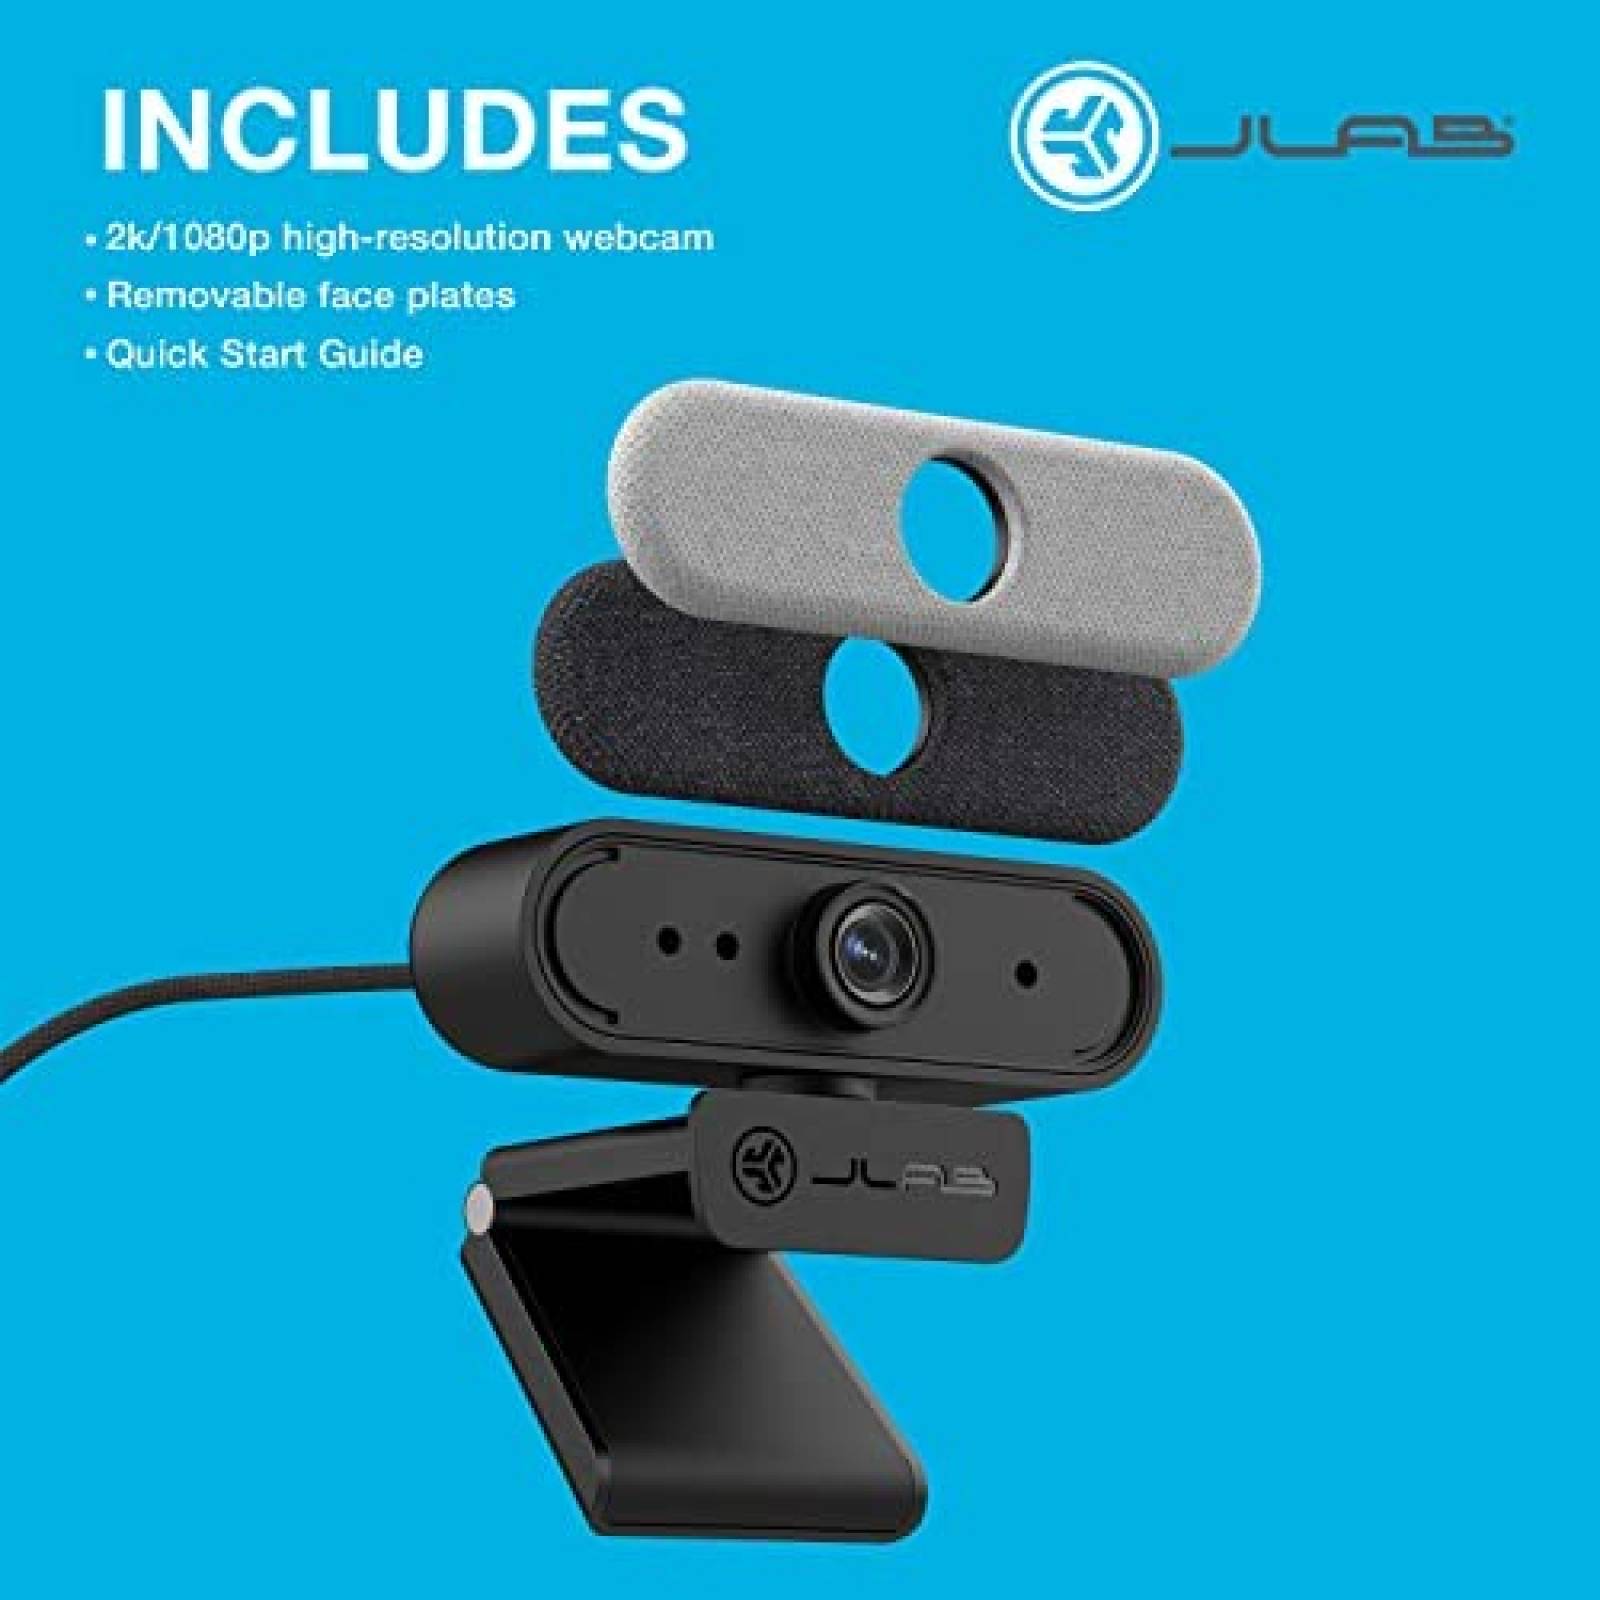 JLab® EPIC CAM USB Wireless Webcam, Black